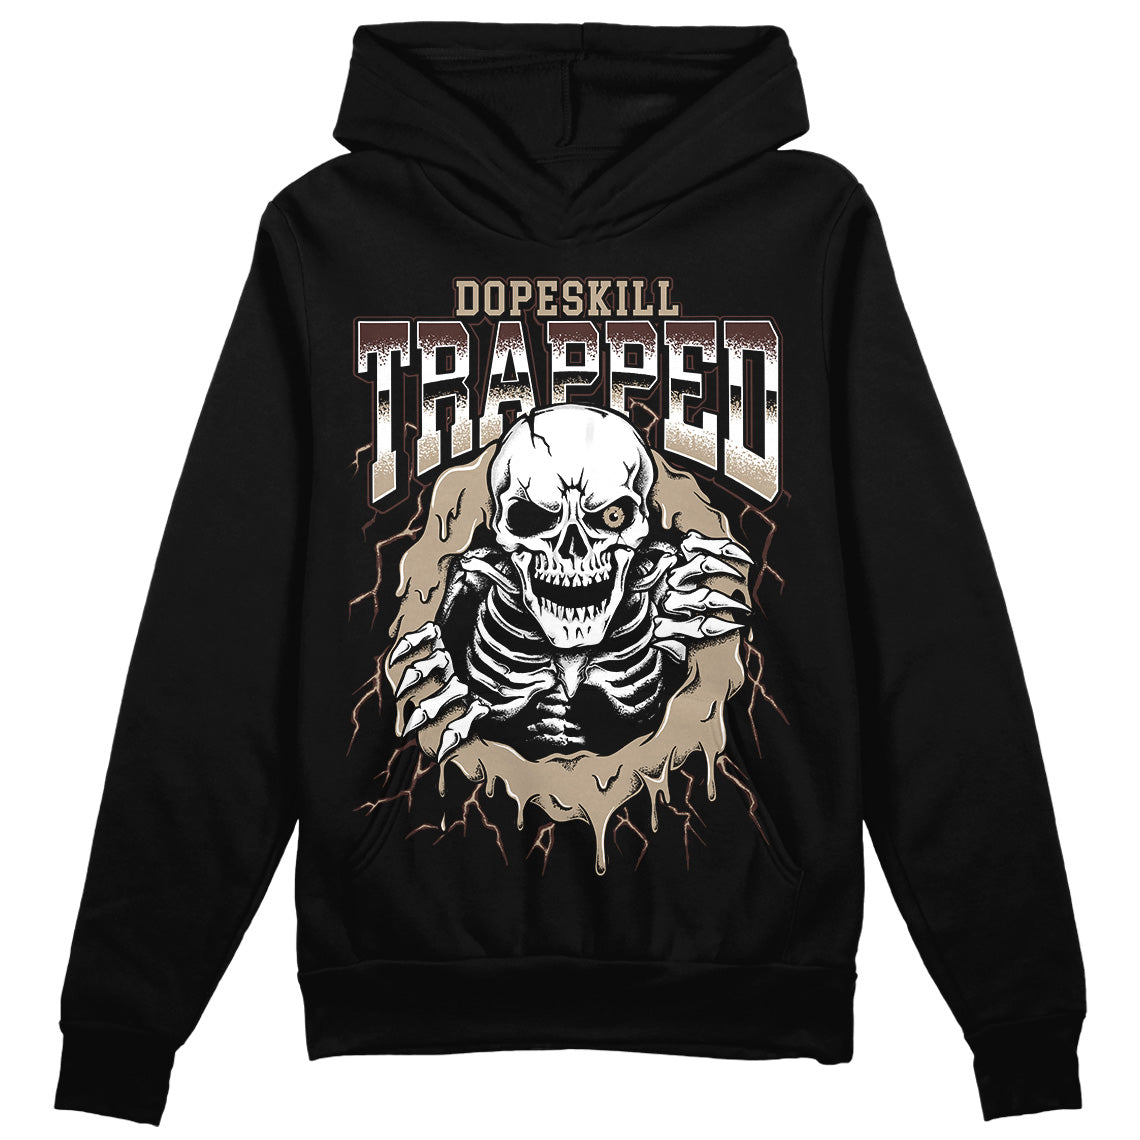 Jordan 1 High OG “Latte” DopeSkill Hoodie Sweatshirt Trapped Halloween Graphic Streetwear - Black